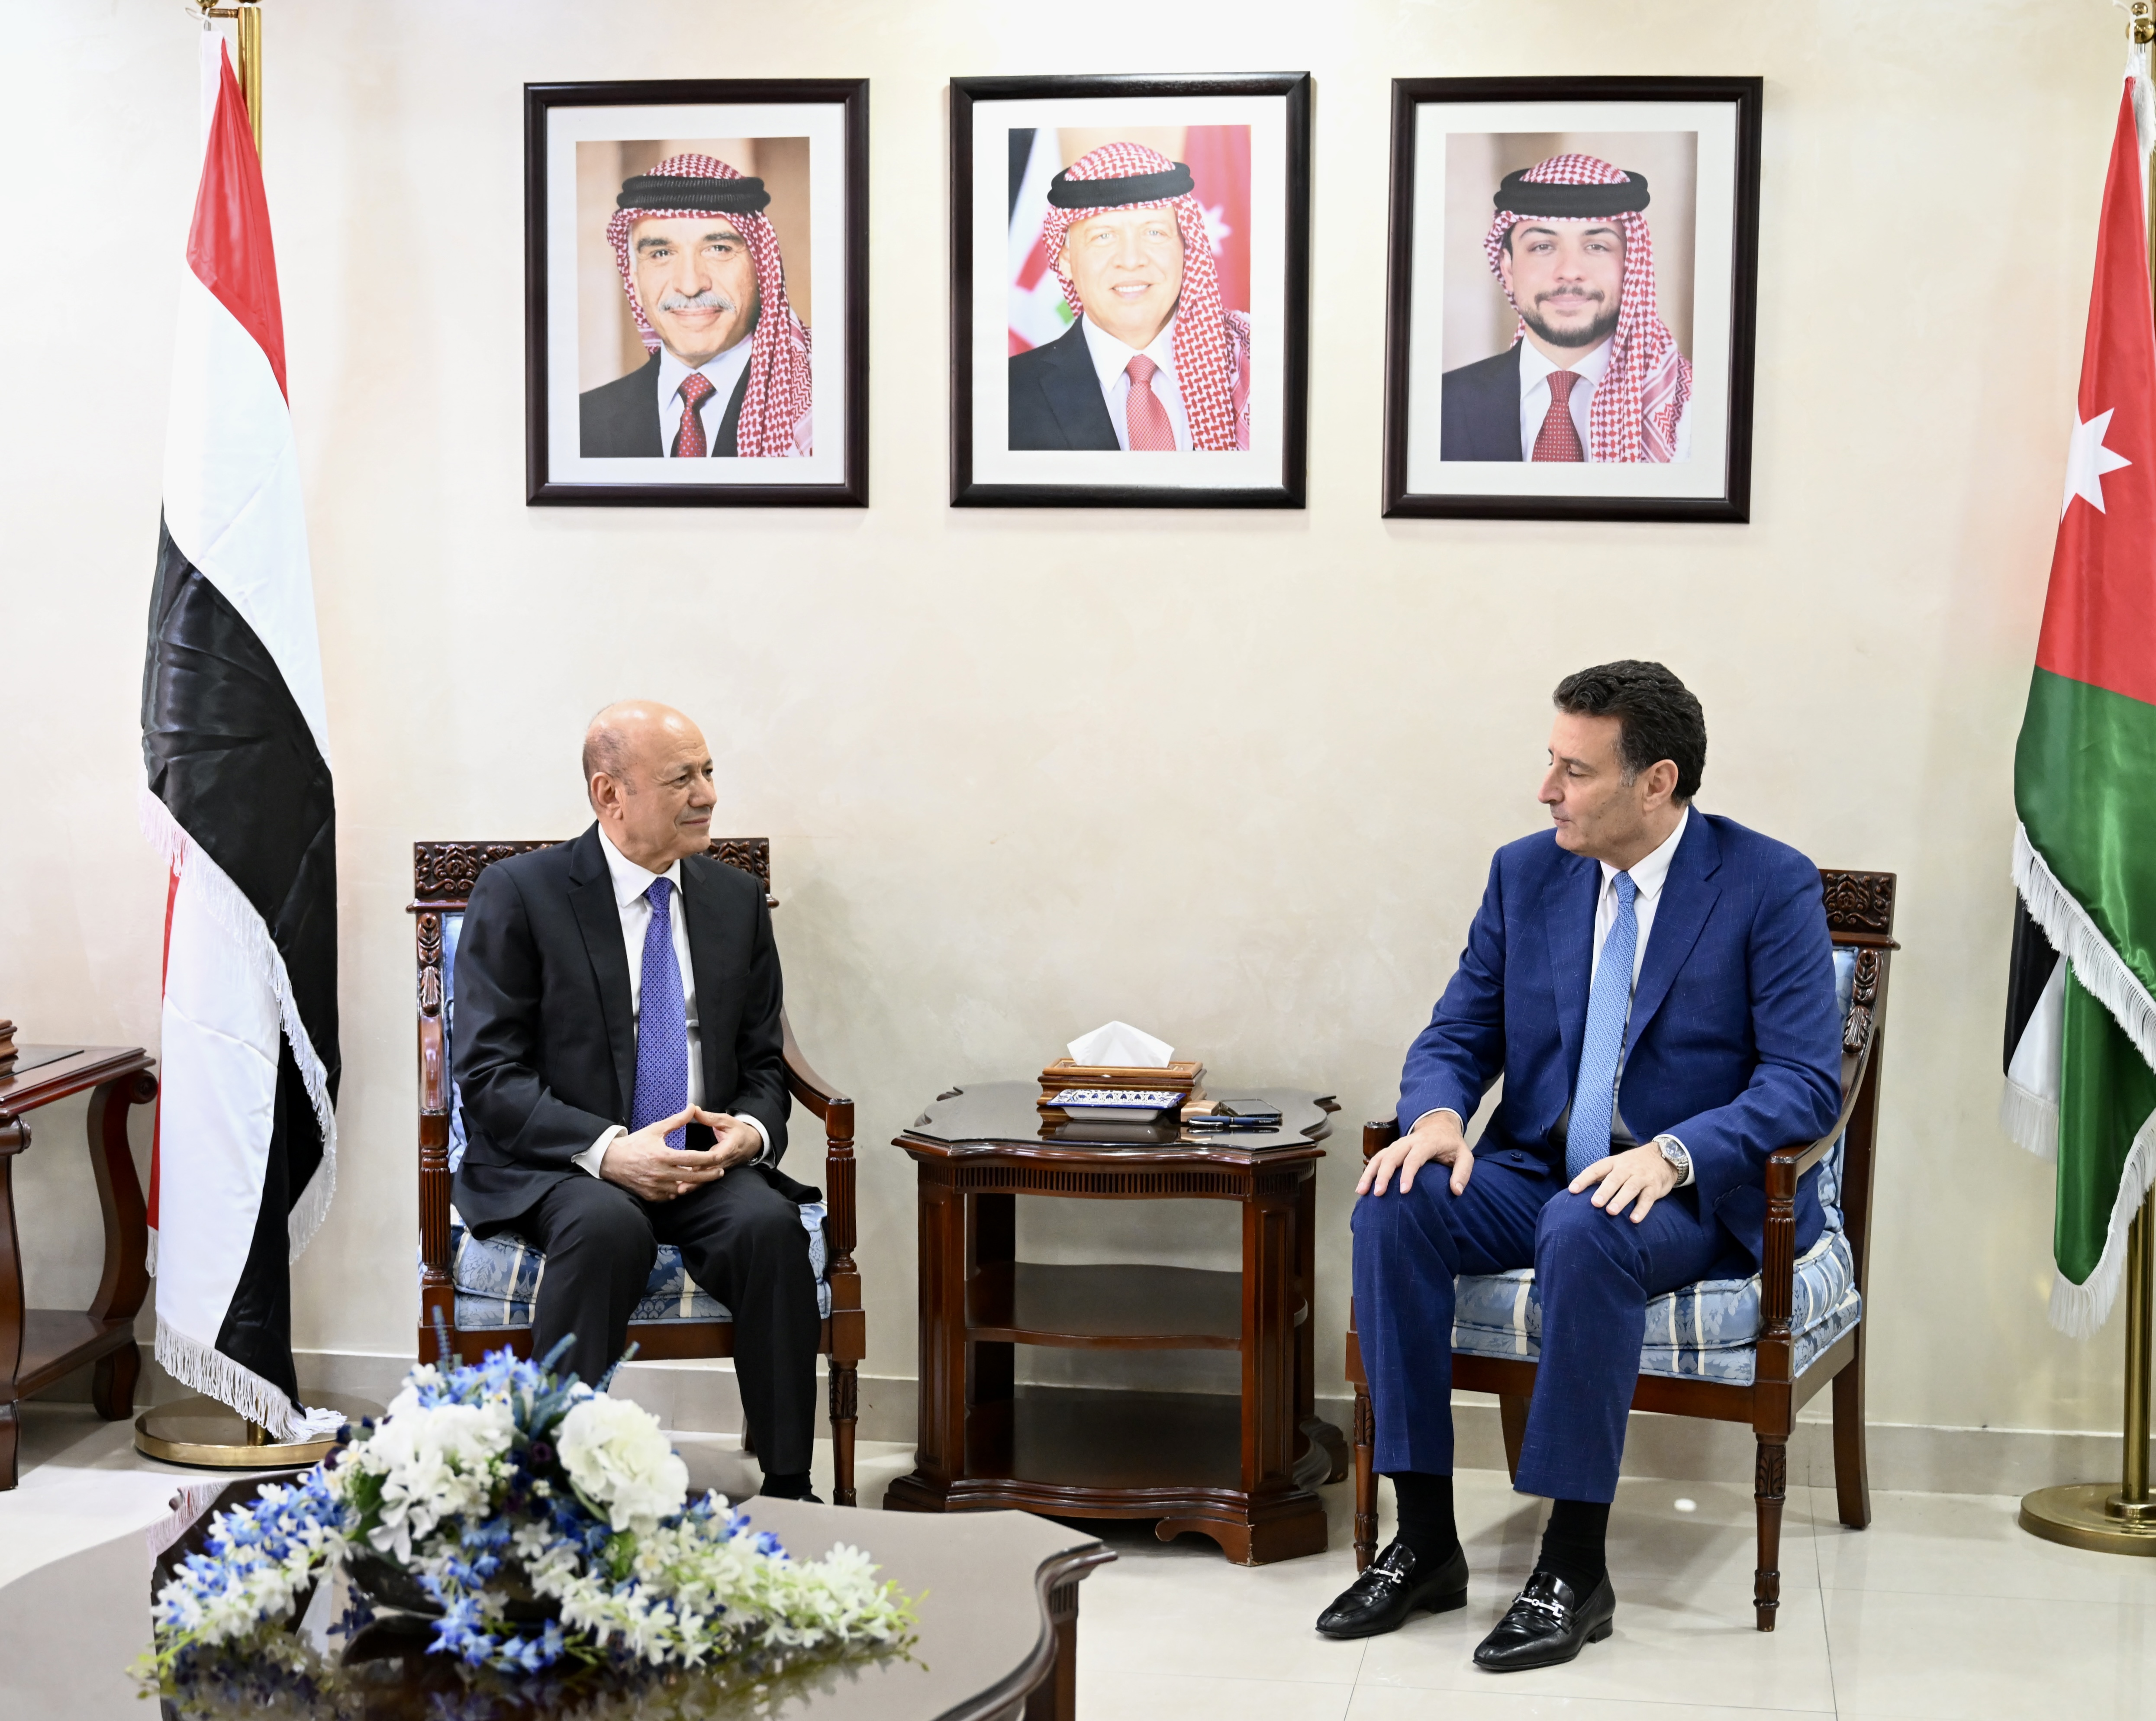 رئيس مجلس القيادة الرئاسي يلتقي رئيس مجلس النواب الأردني